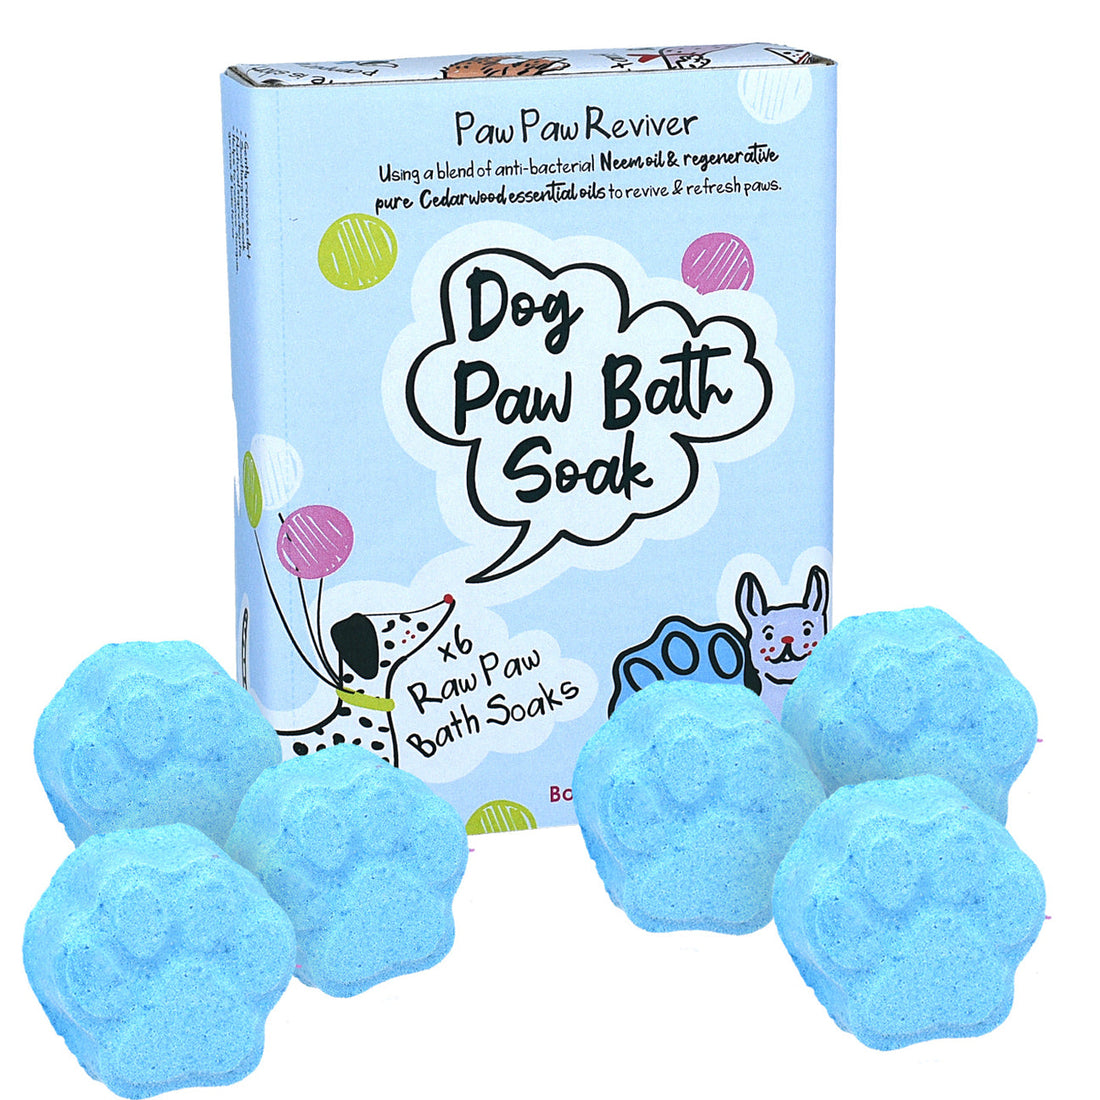 Paw Paw Reviver Raw Paw Soak